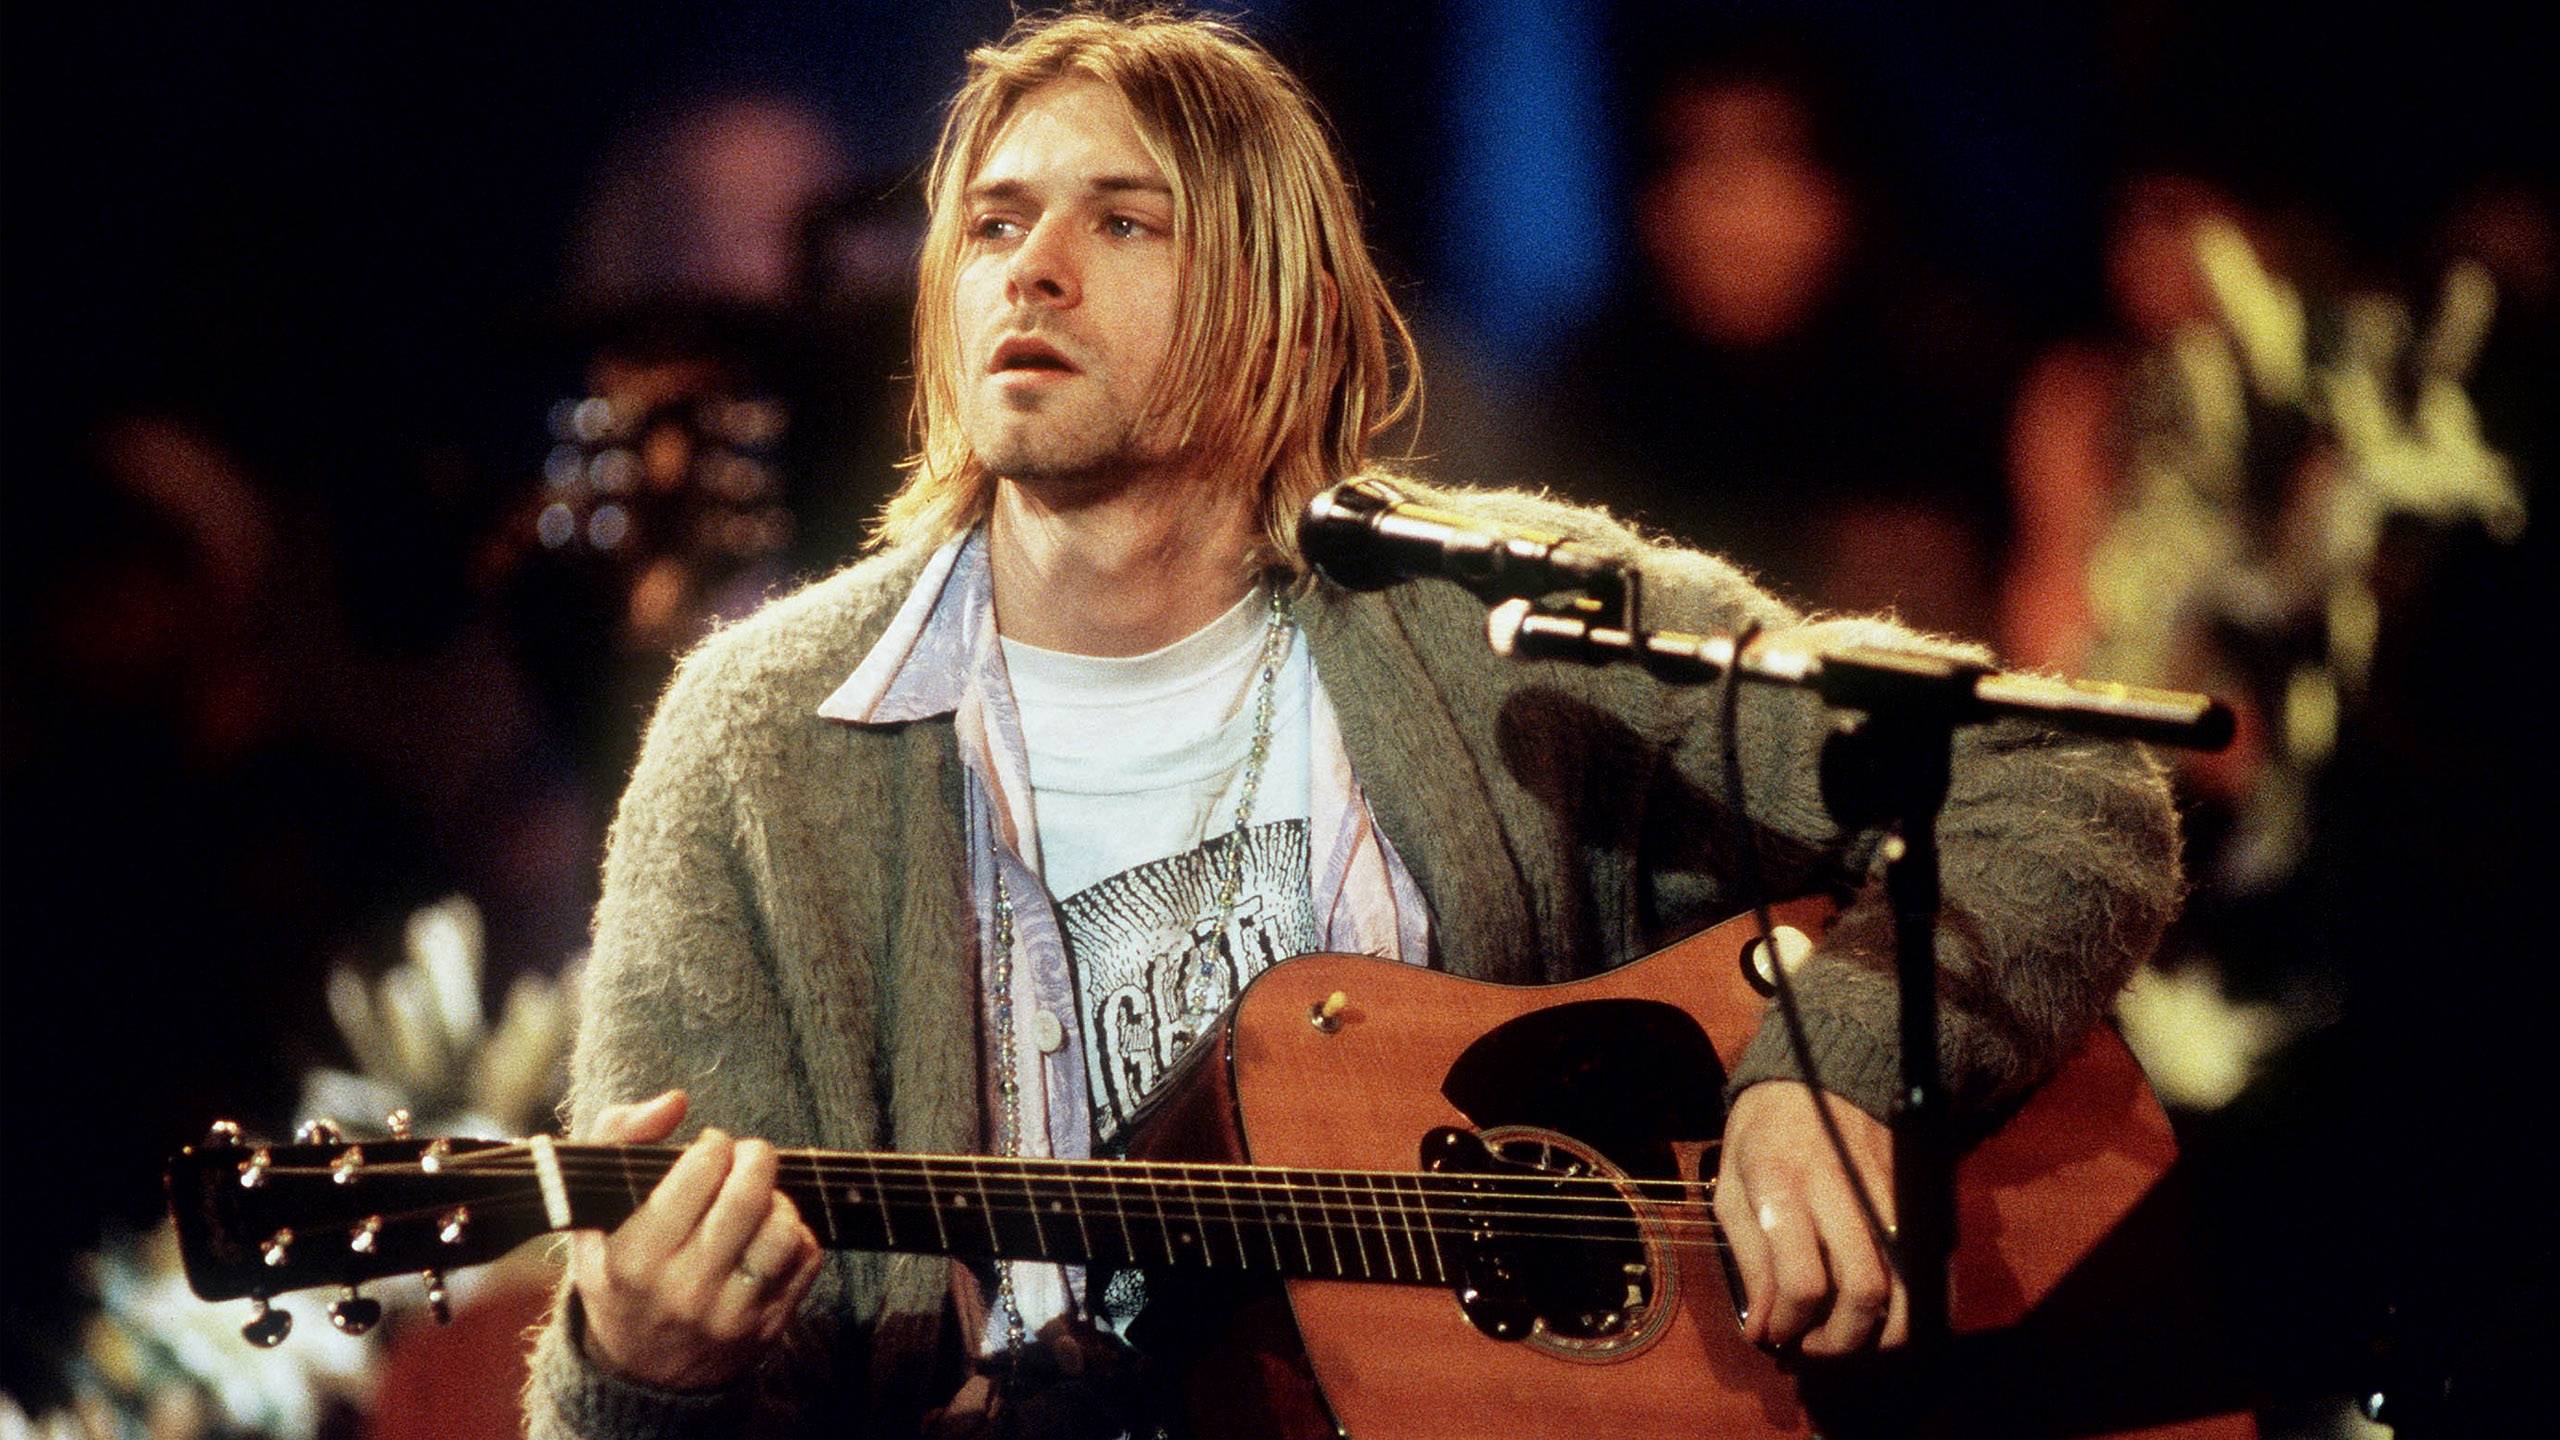 Kurt Cobain Wallpaper 33646 2560x1440 px